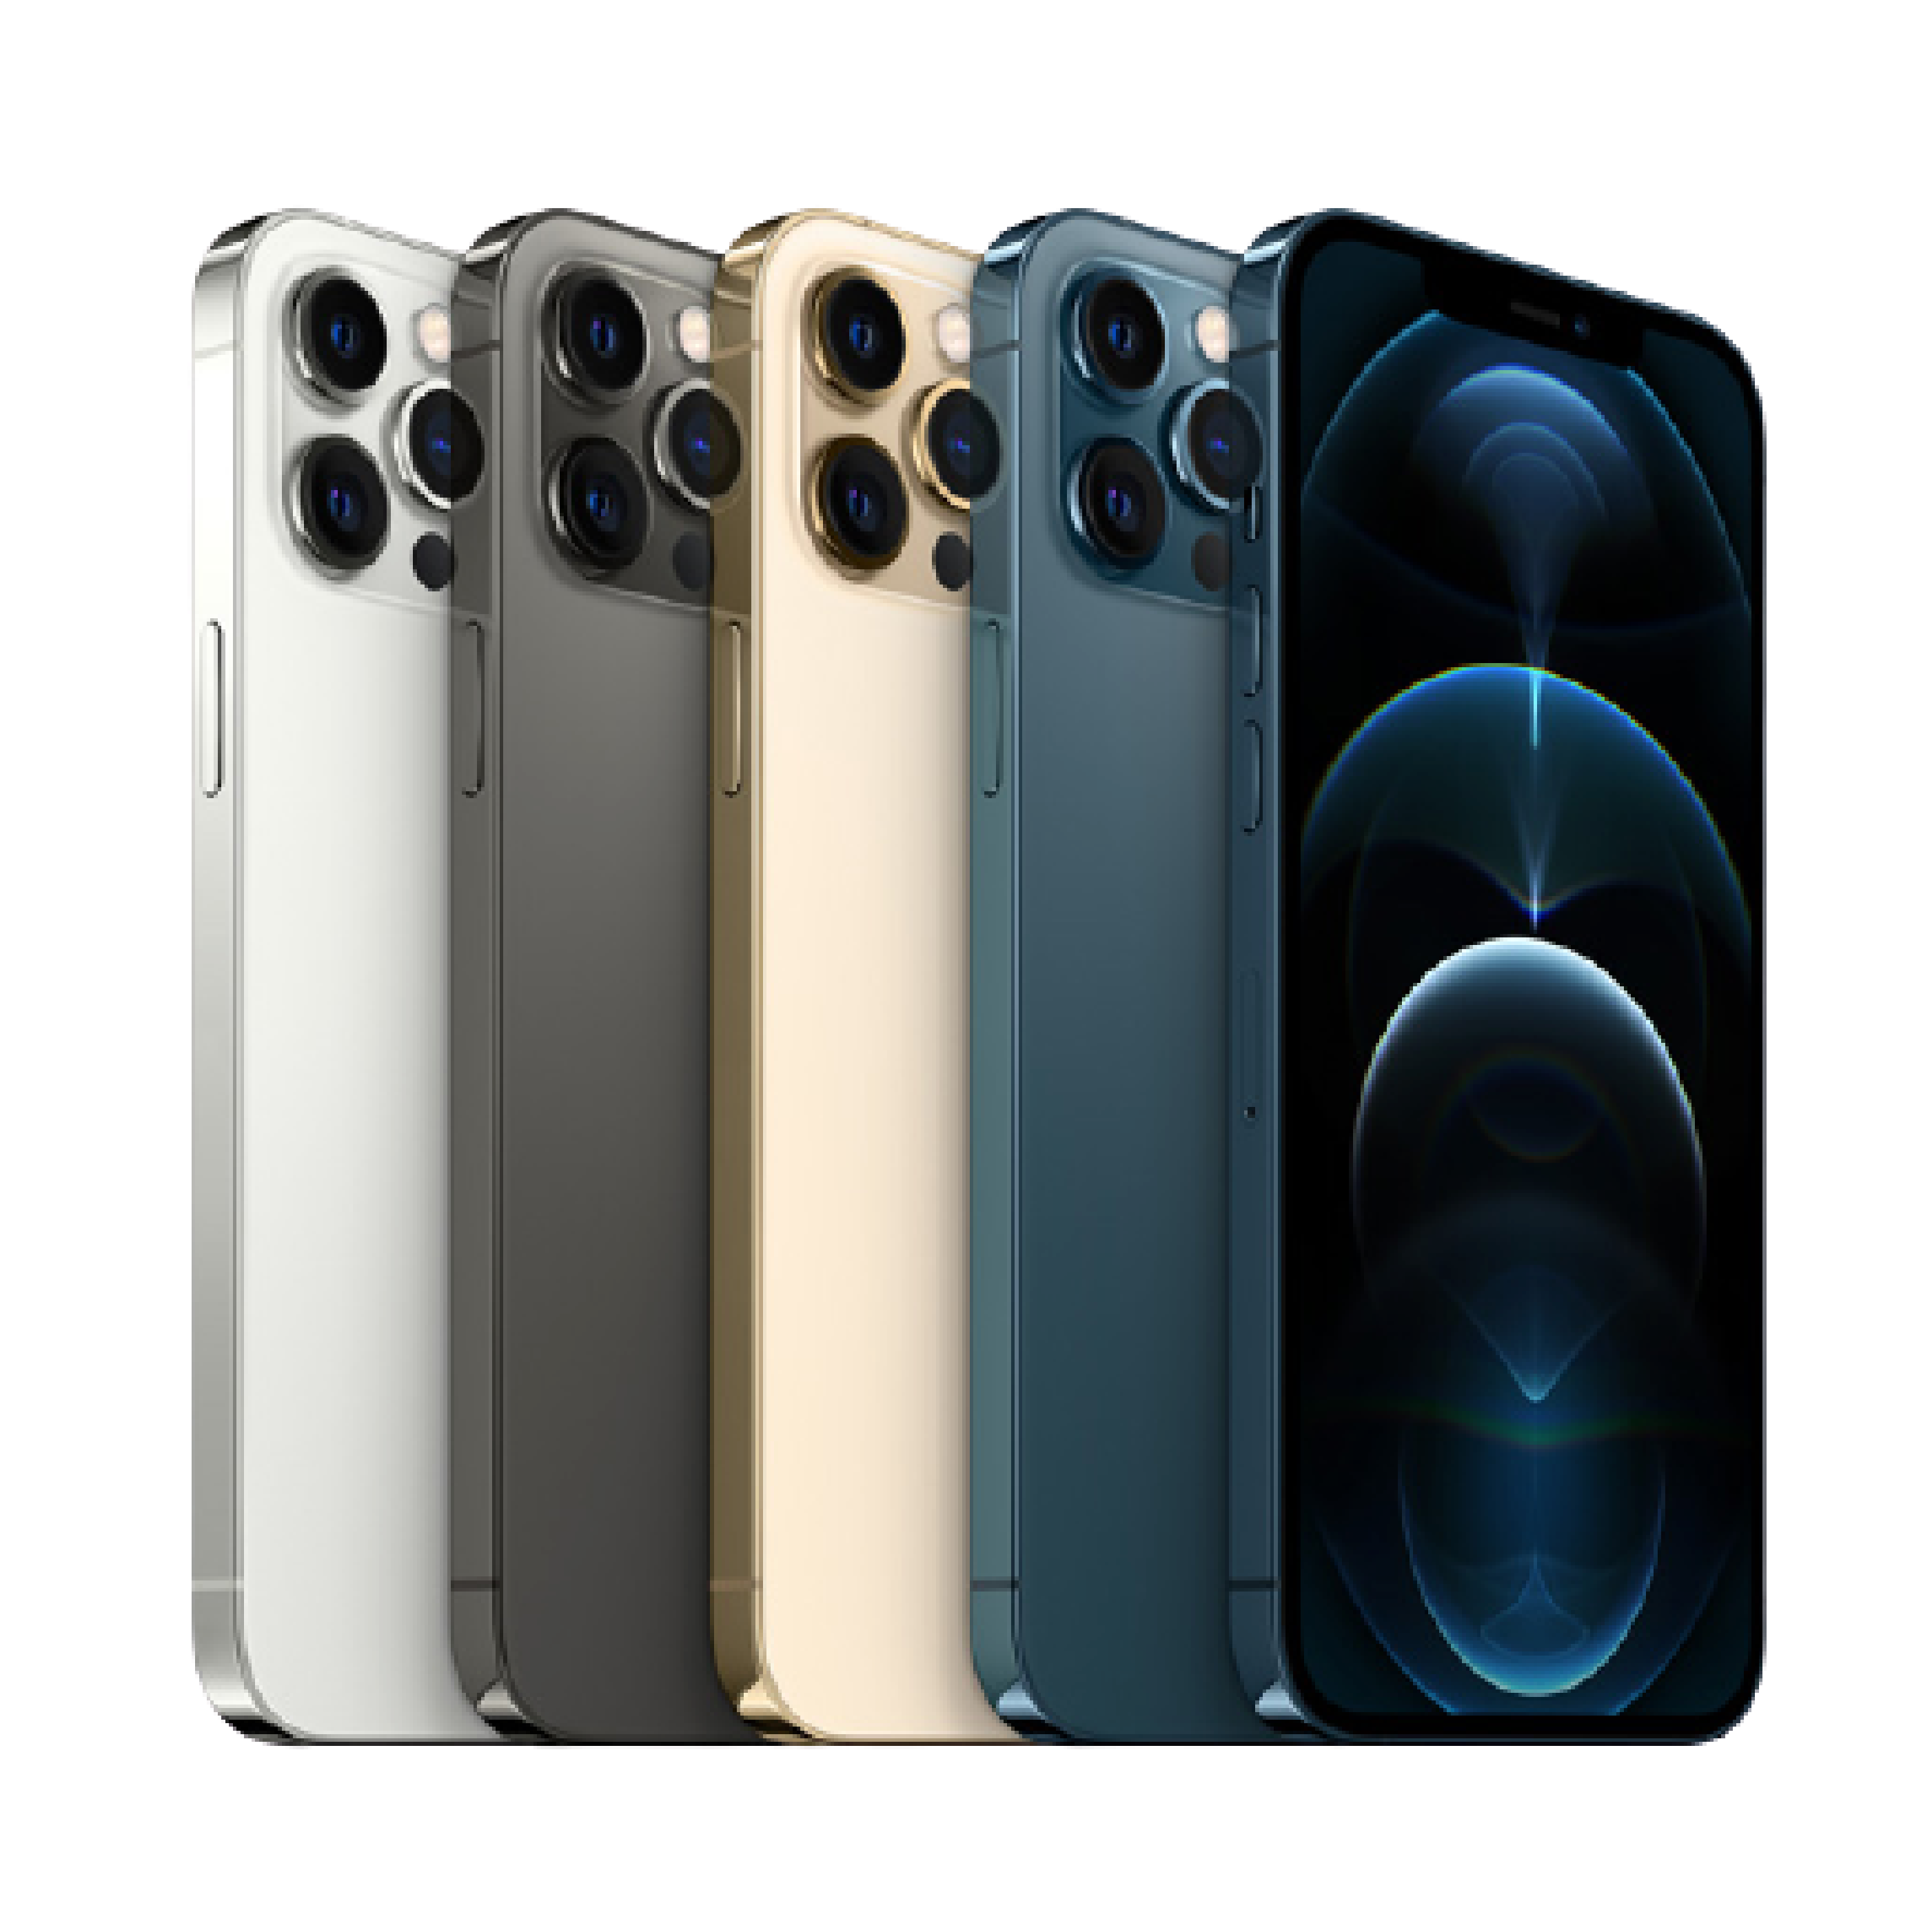 گوشی موبایل اپل مدل iPhone 12 pro دو سیم کارت ظرفیت 128 گیگابایت Dual SIM thumb 260